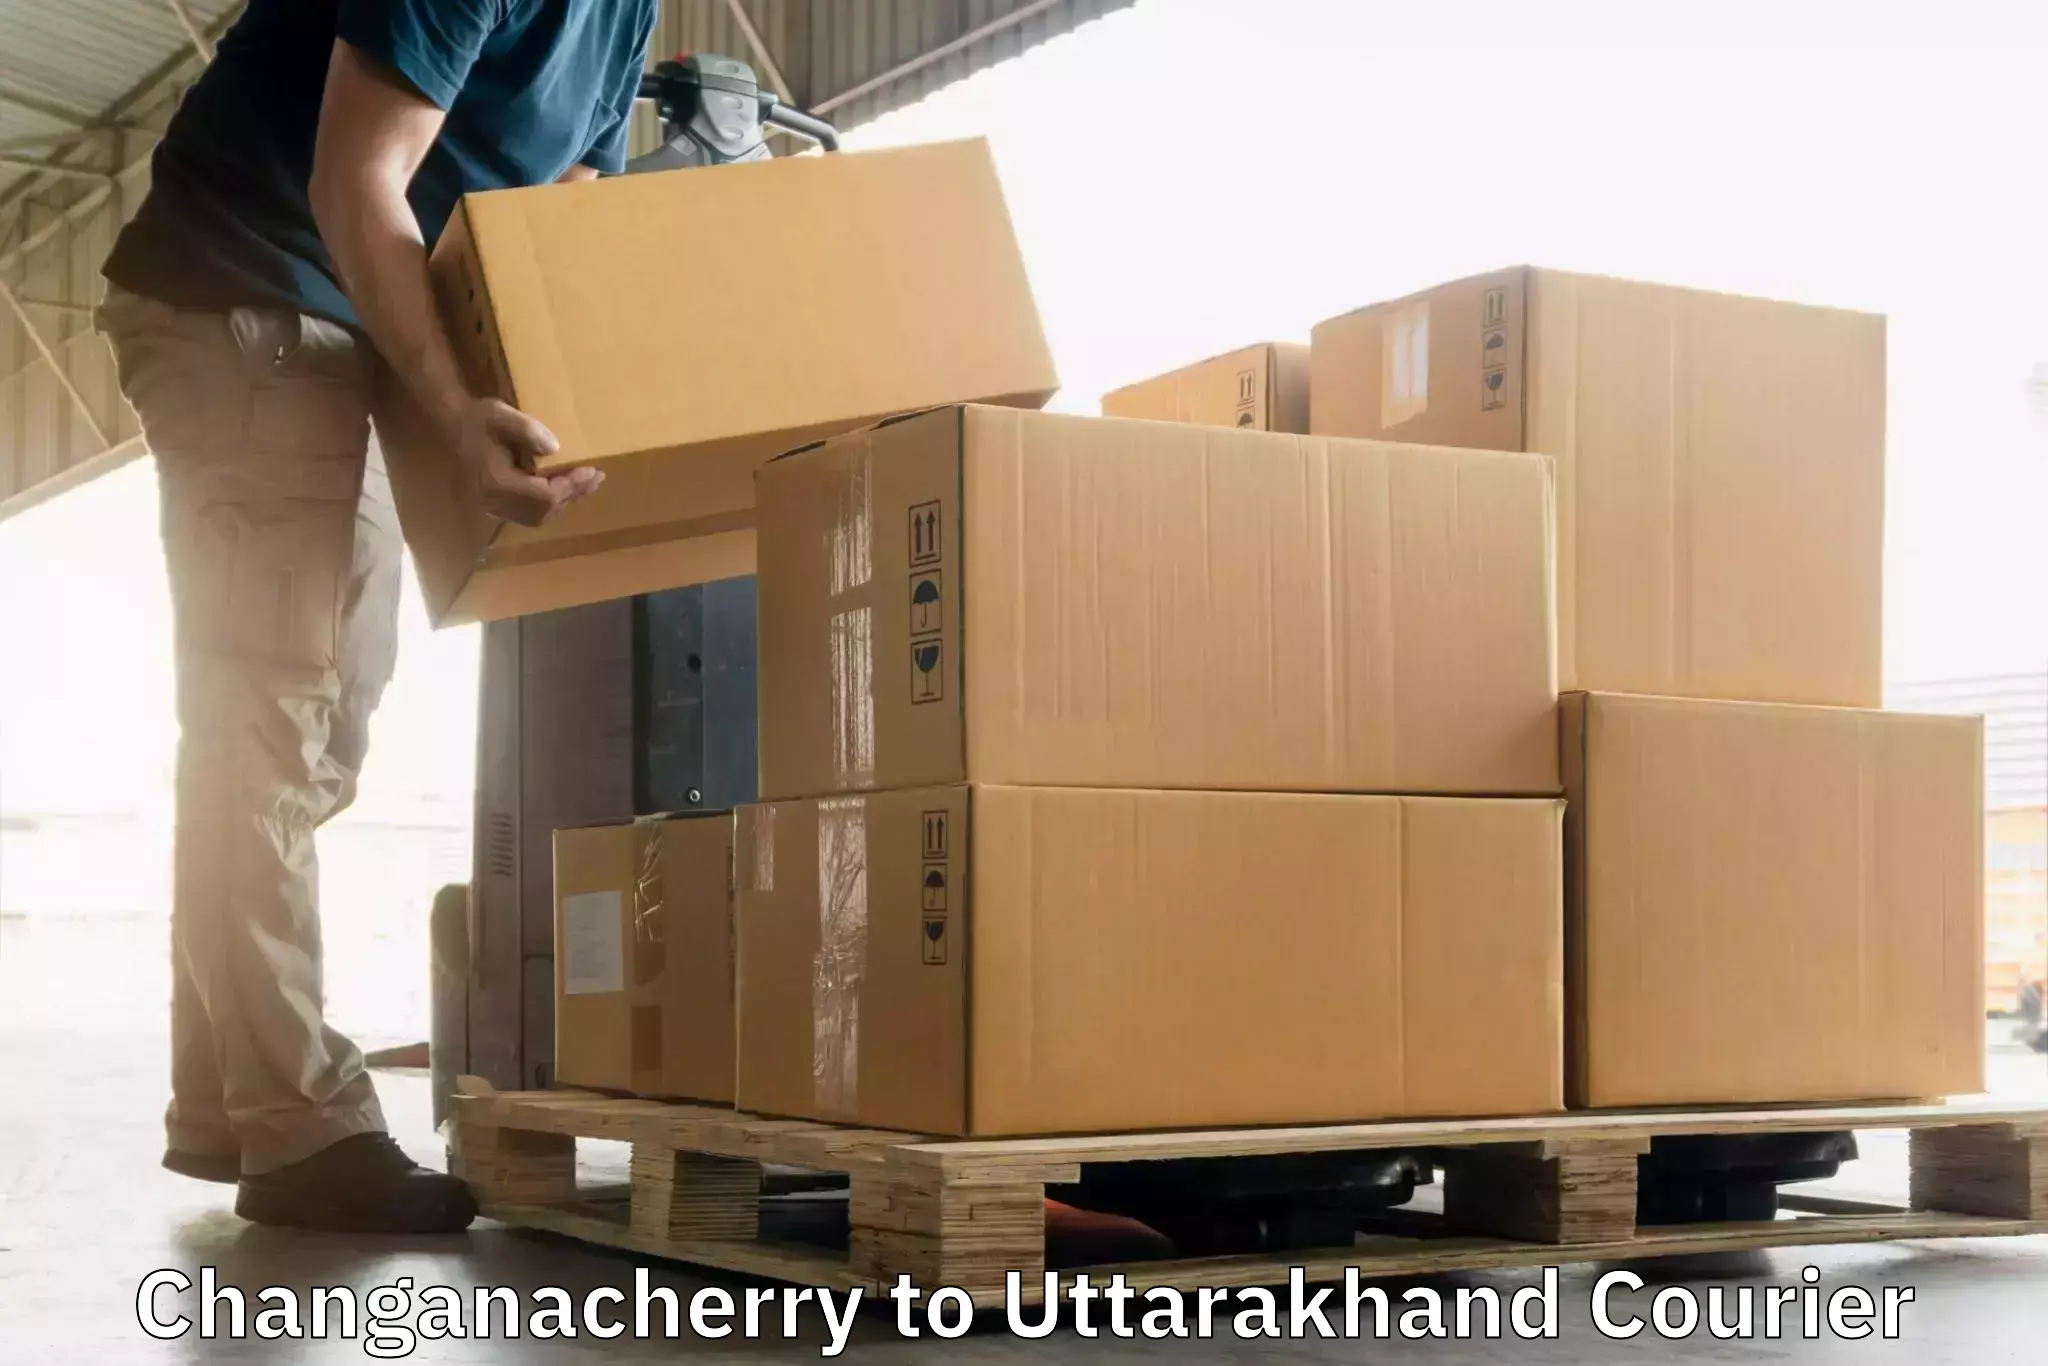 Tracking updates in Changanacherry to Rudrapur